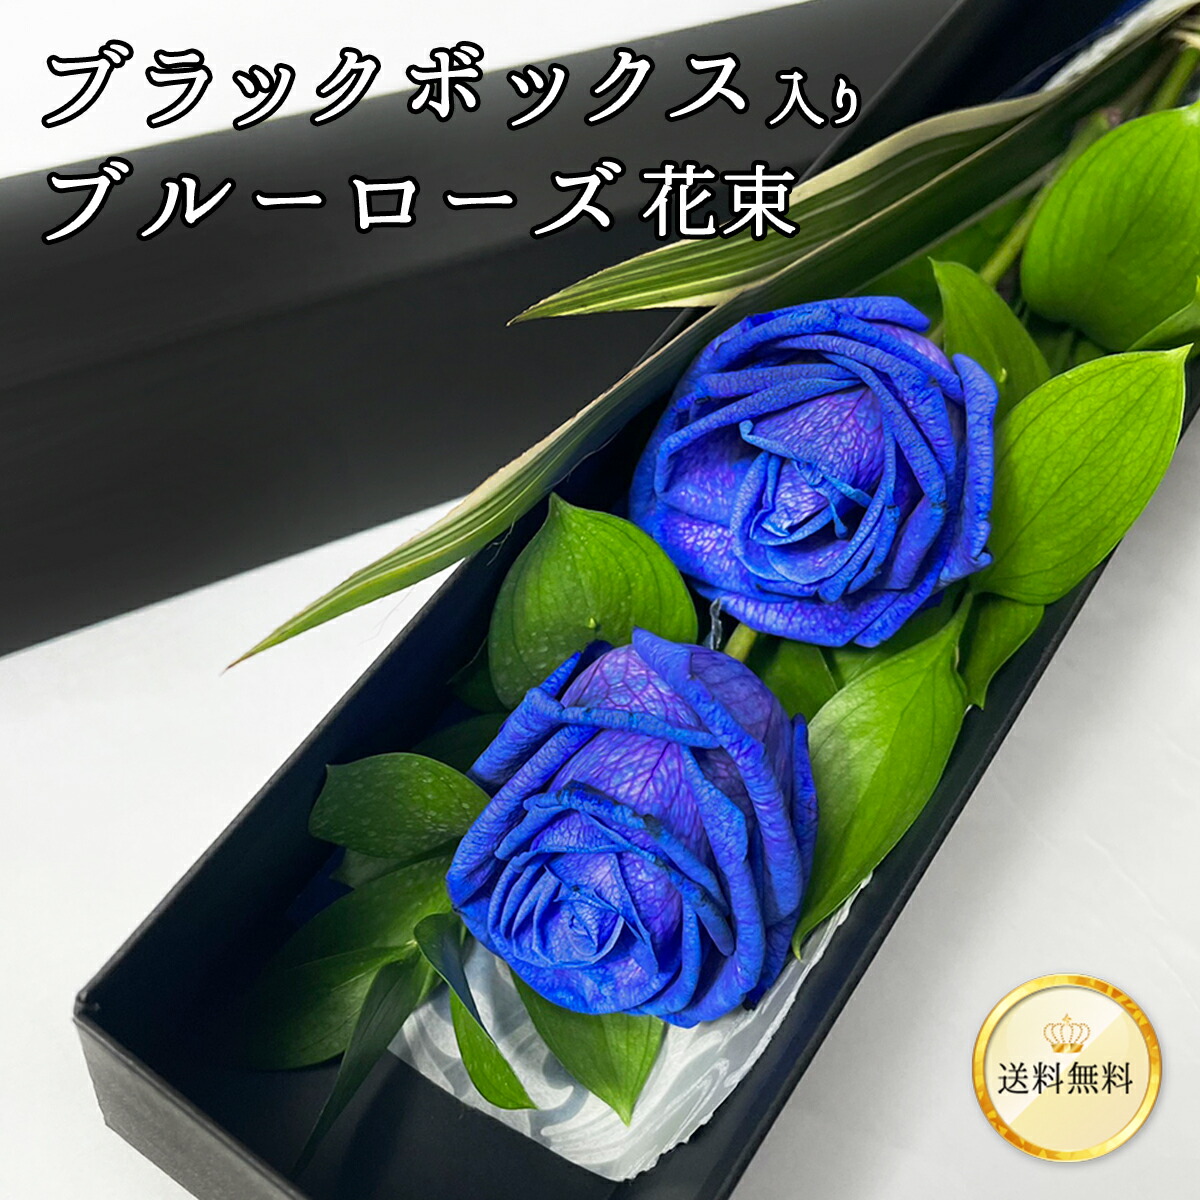 競売 青い薔薇様 リクエスト 2点 まとめ商品 | www.artfive.co.jp